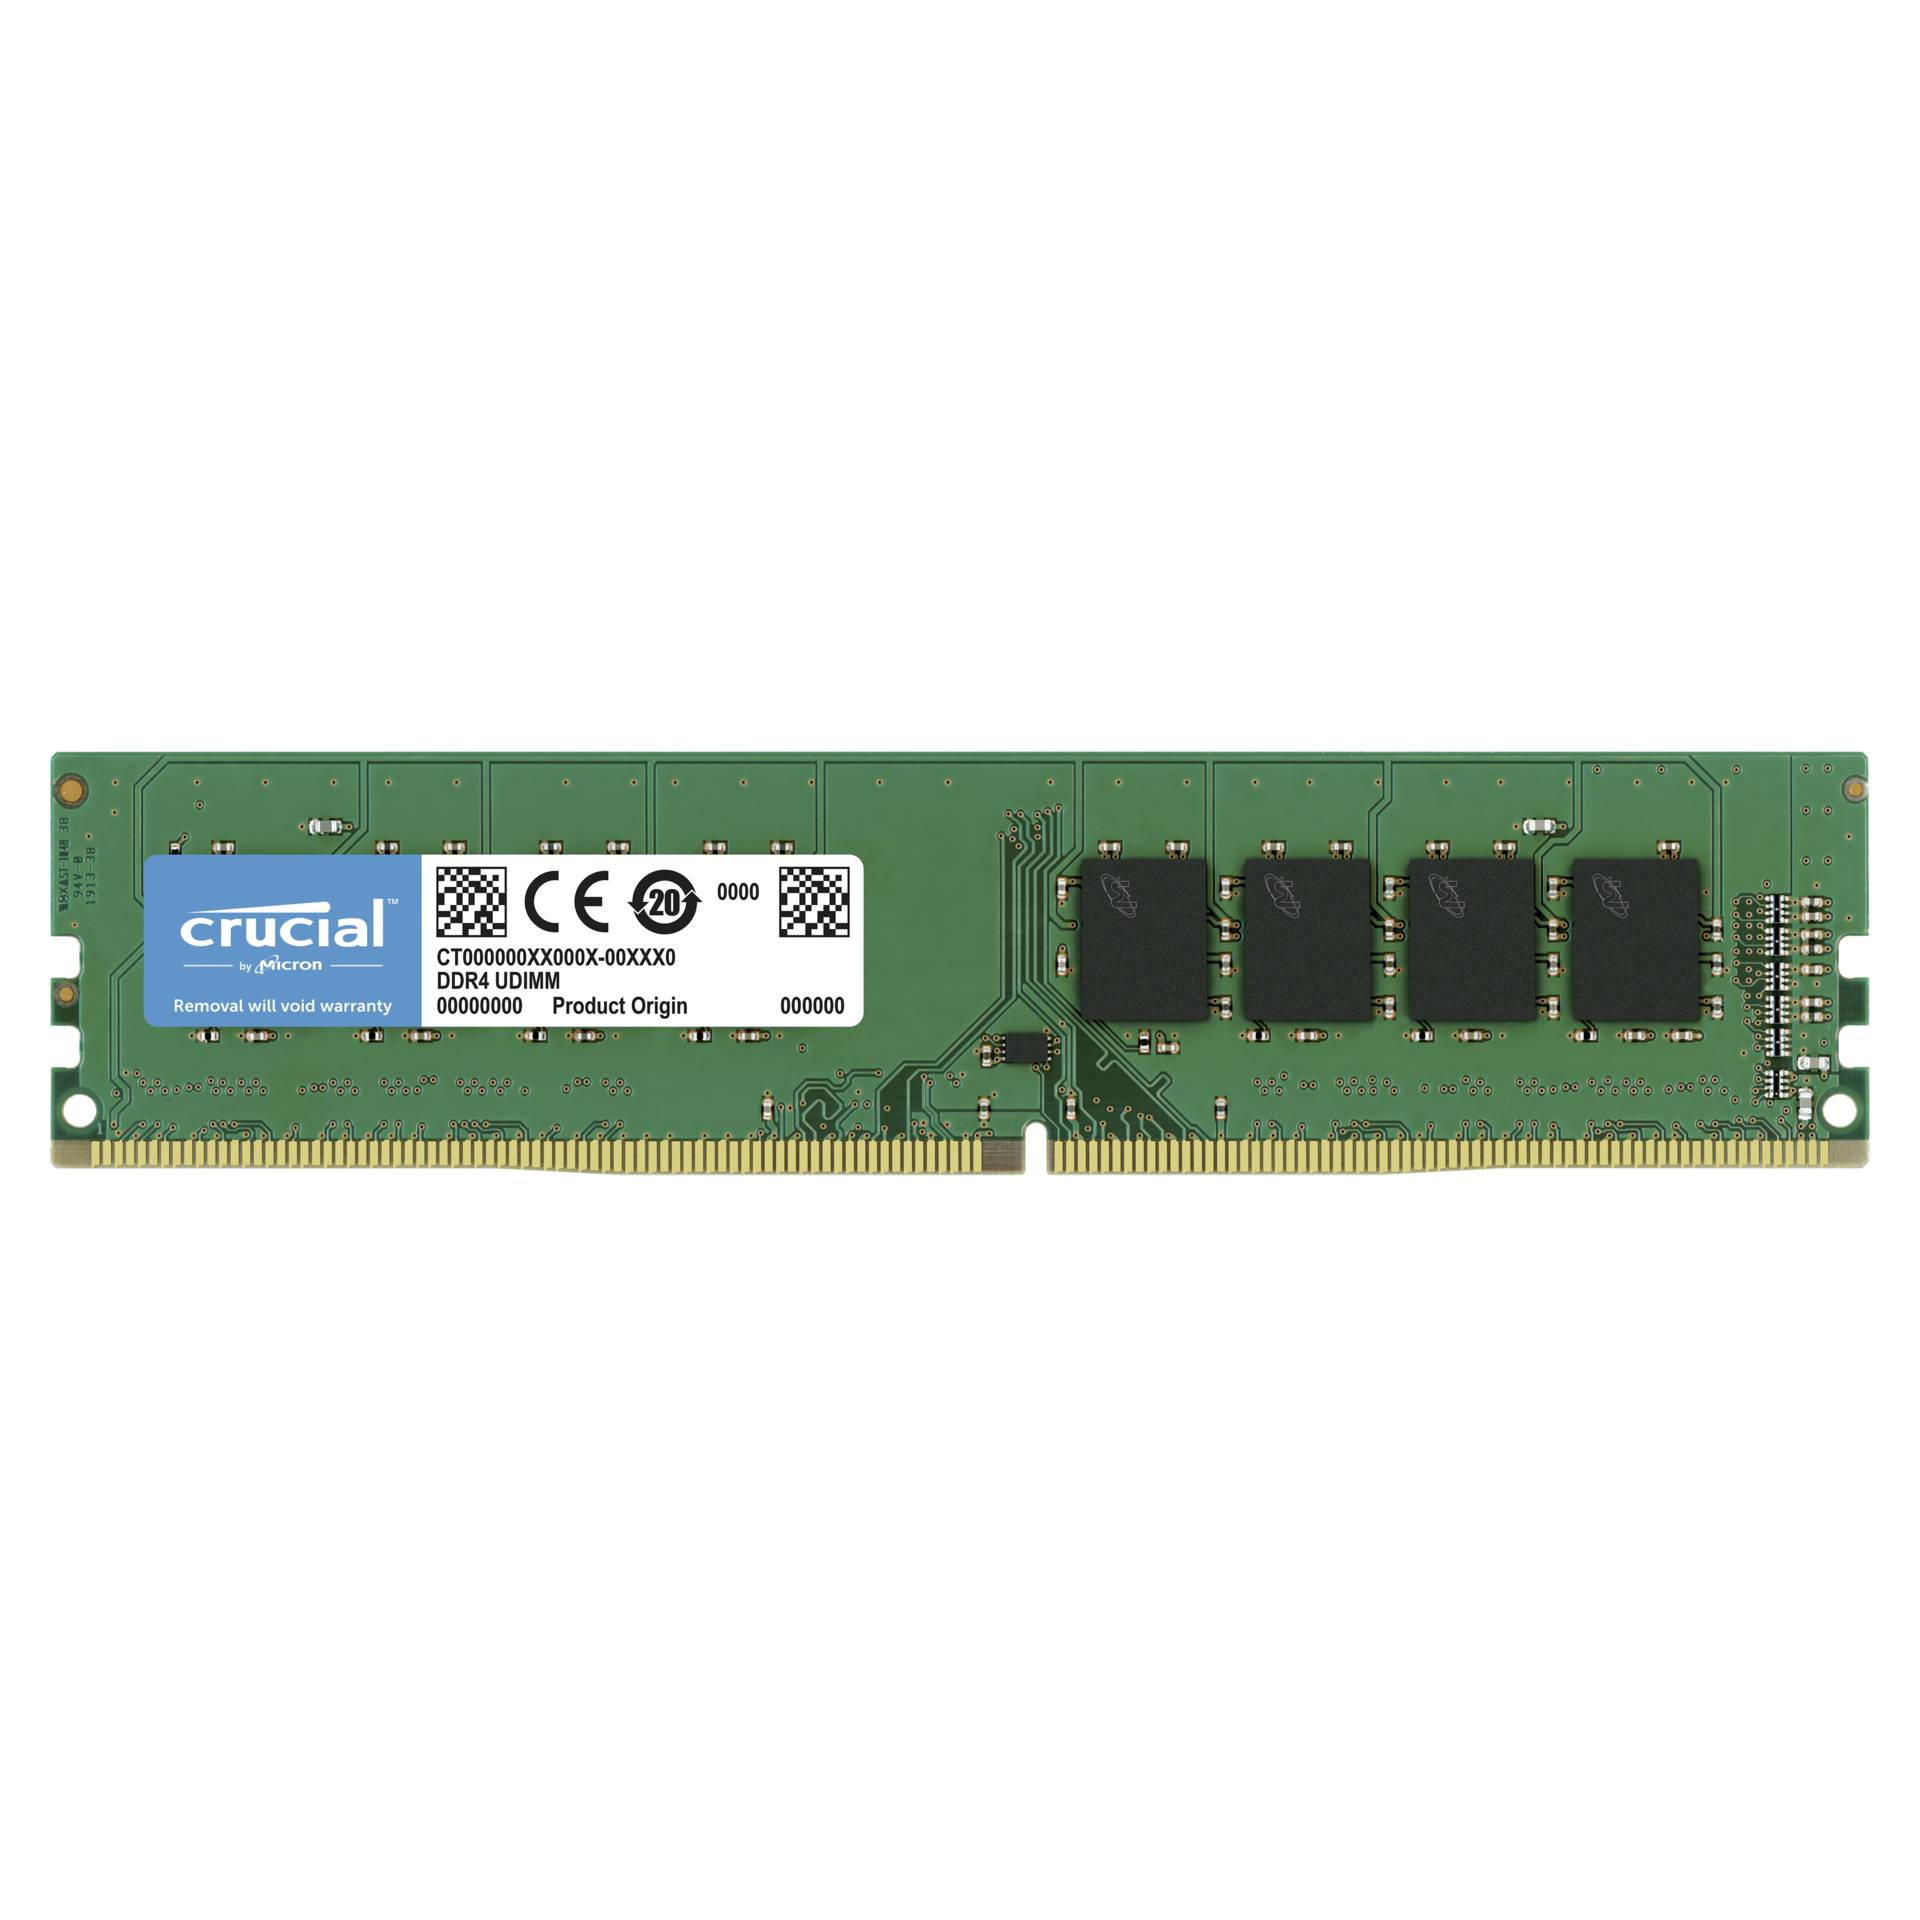 DDR4RAM 8GB DDR4-3200 Crucial DIMM, CL22-22-22 